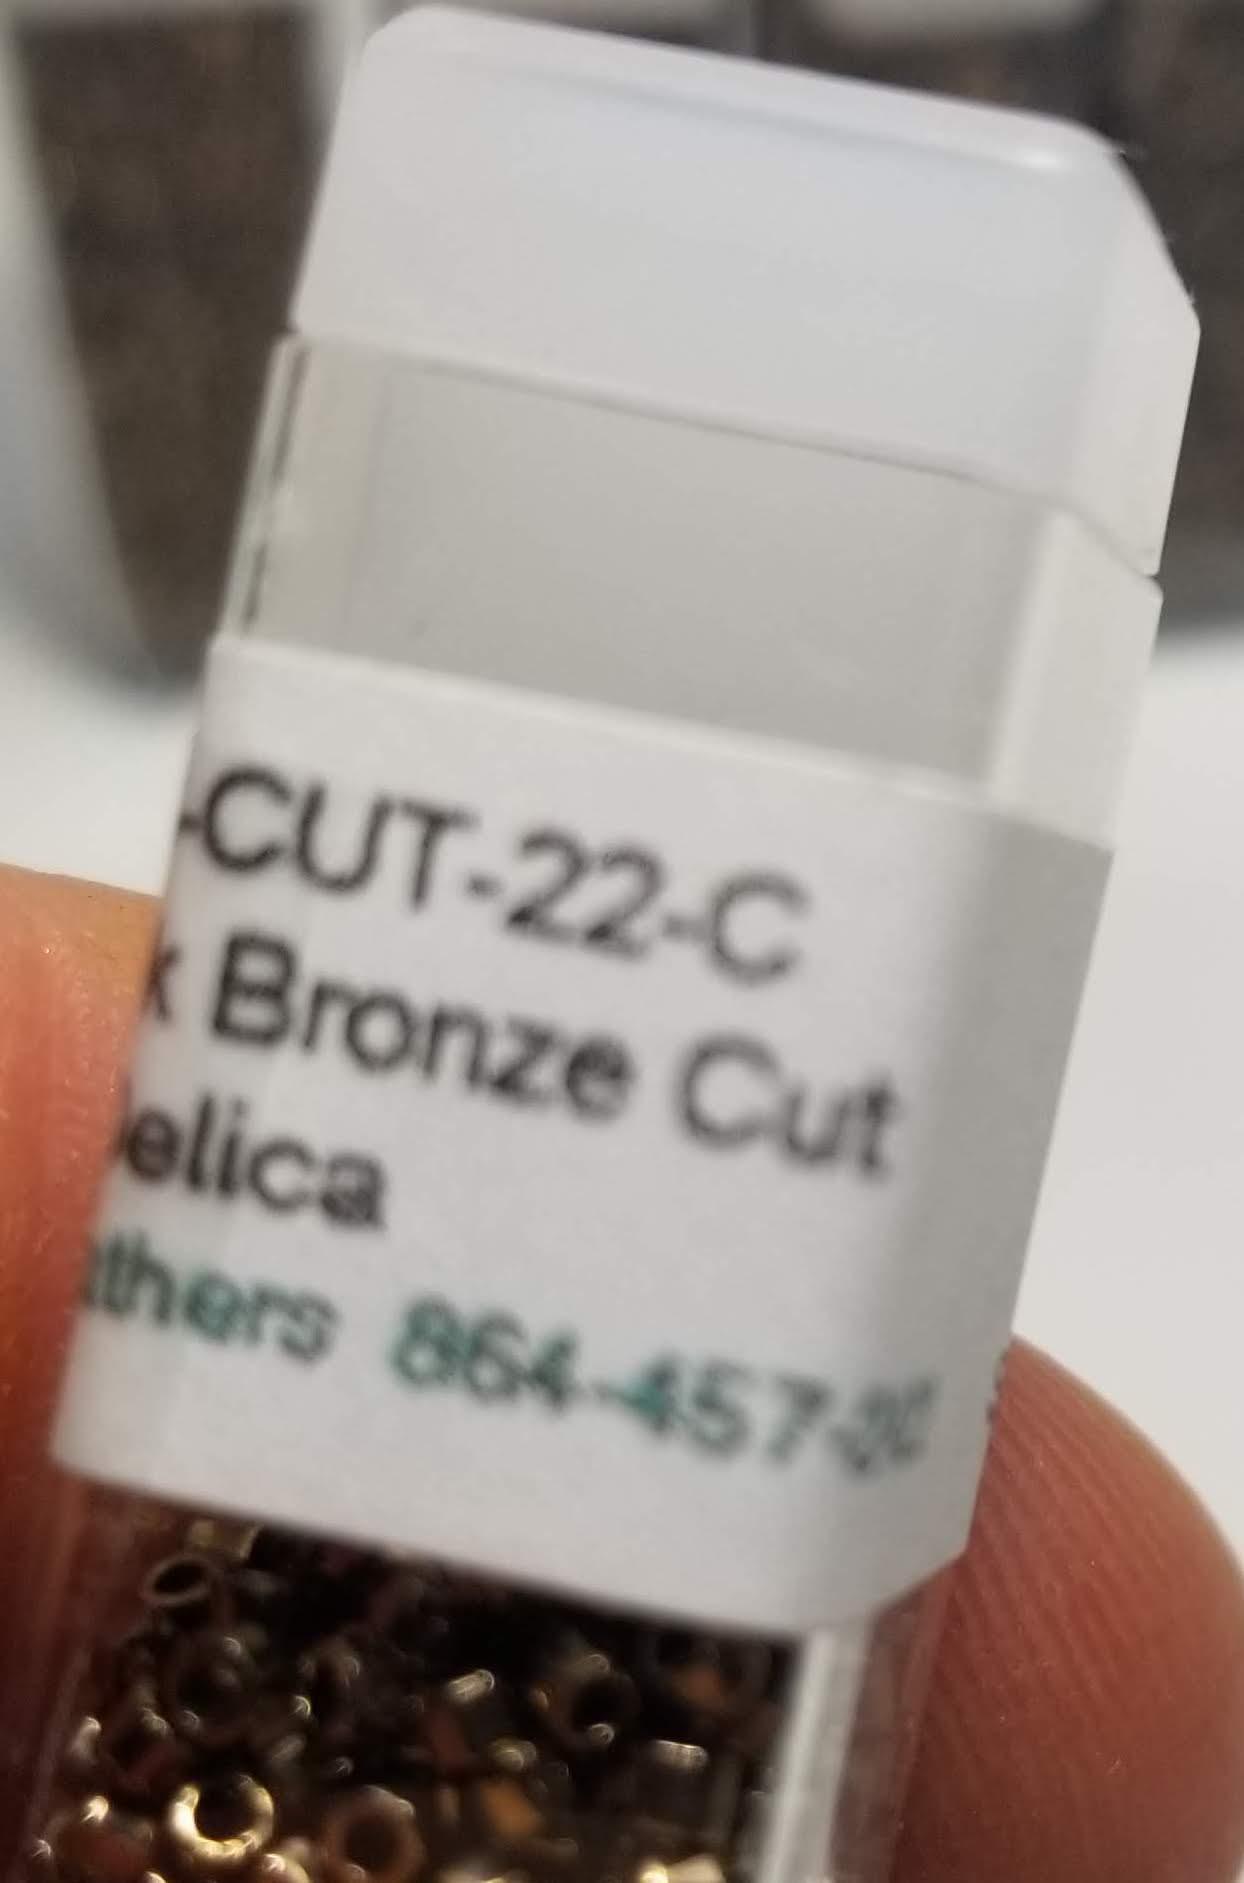 CV -DB-Cut-22-C 11/Cyl Delica - 5 vials of metallic dark bronze cut